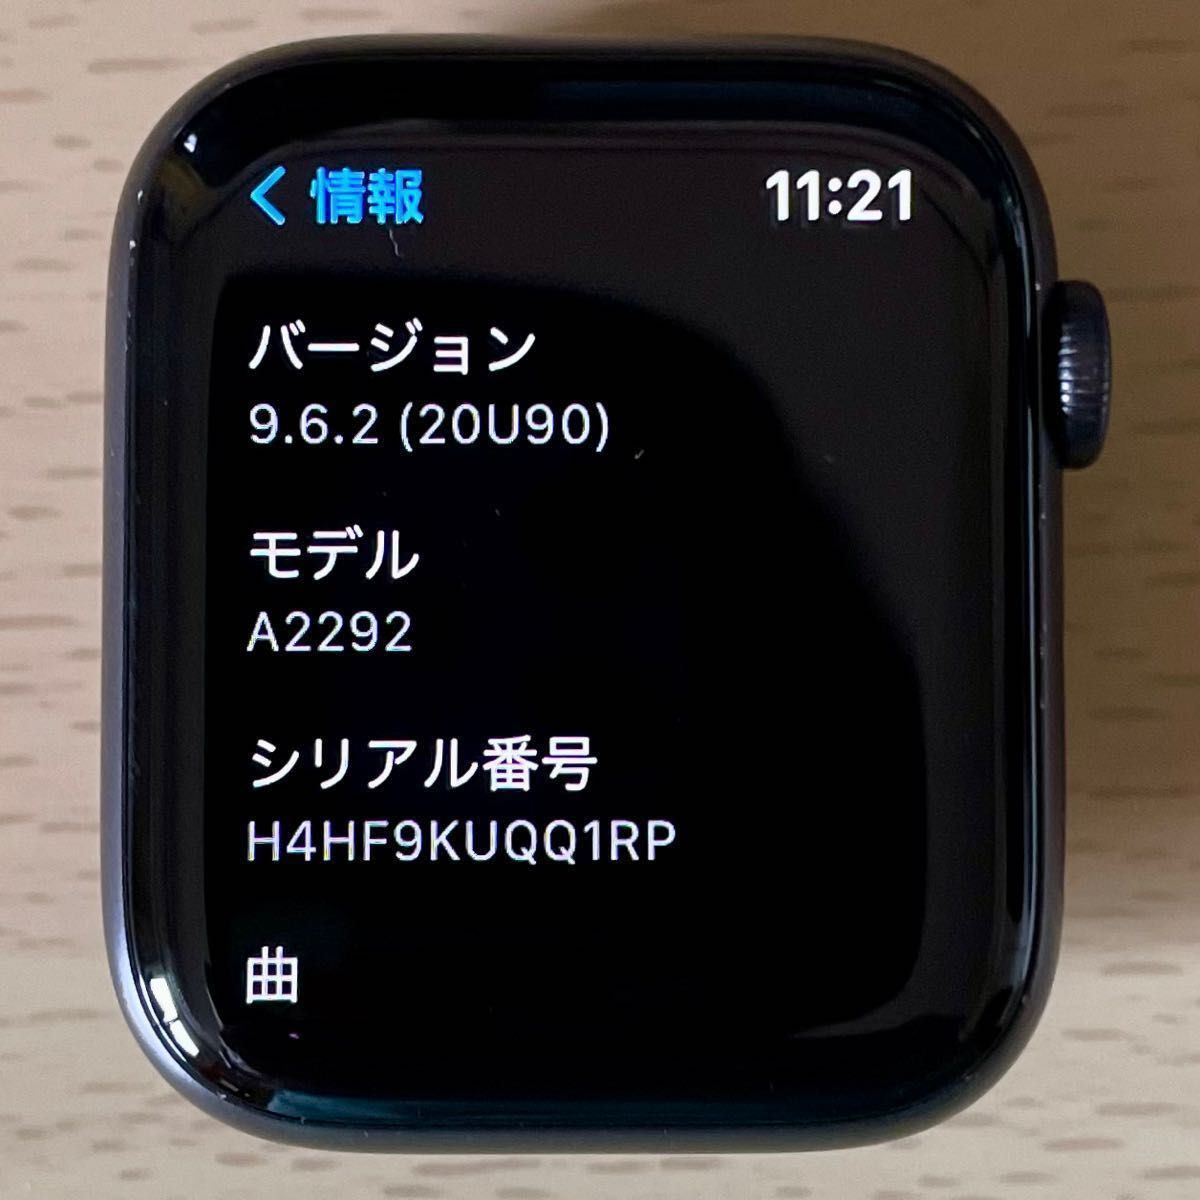 Apple Watch Series 6 GPSモデル 44mm スペースグレイアルミニウム ブラックスポーツバンド